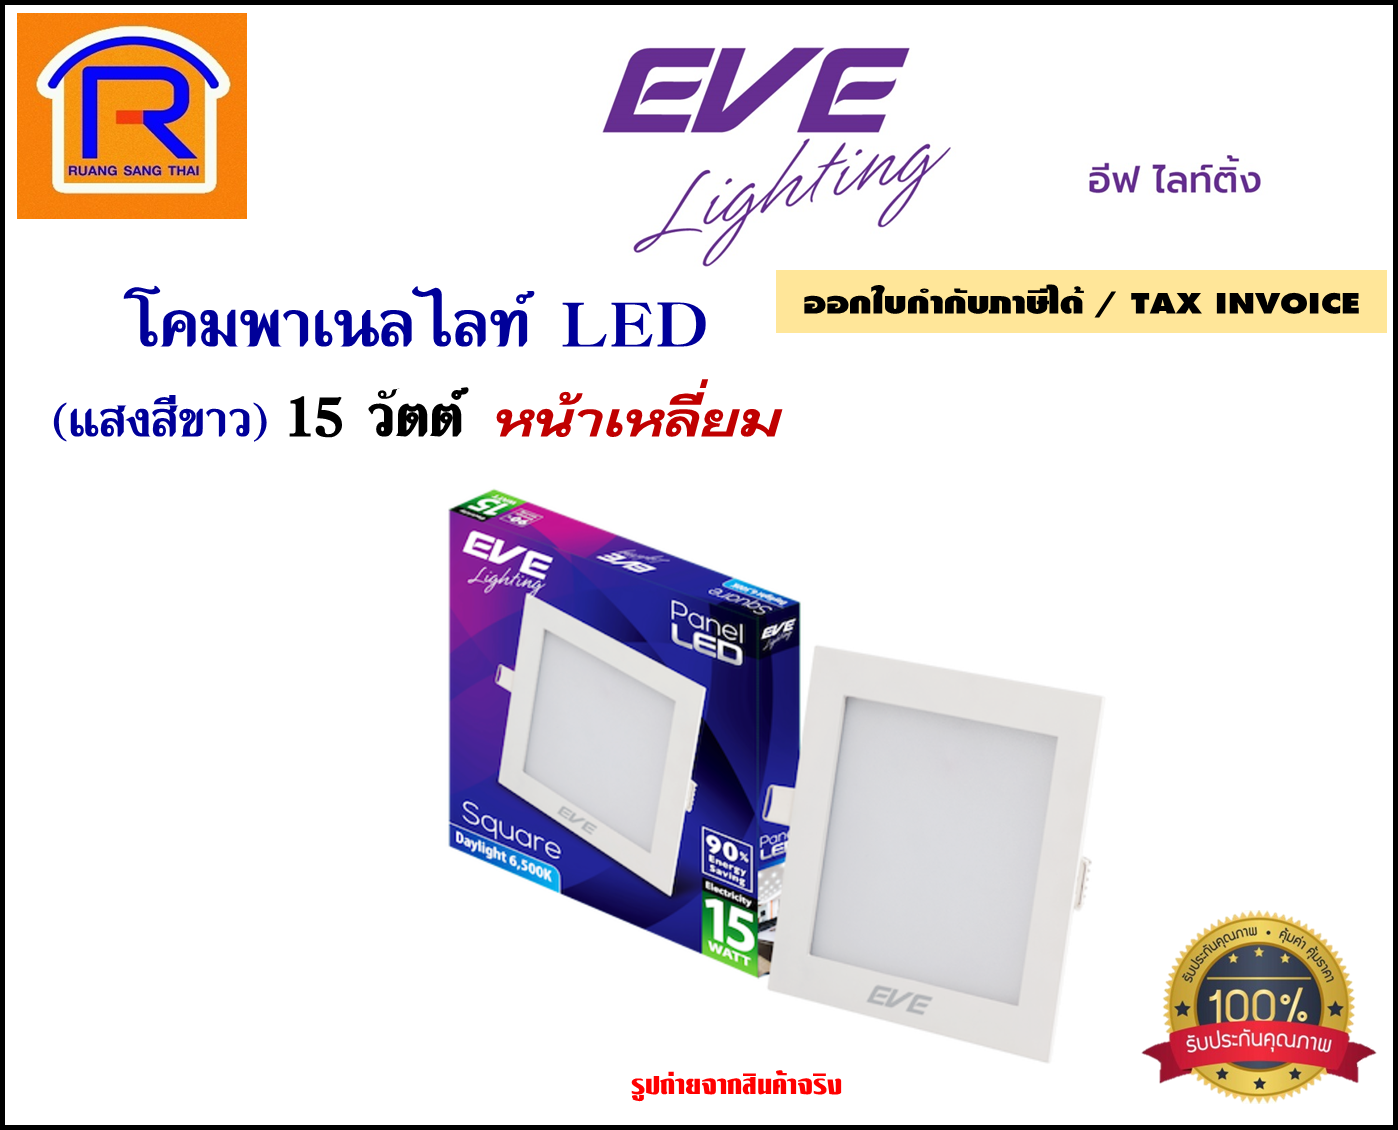 EVE lighting โคมพาเนลไลท์ LED ขนาด 15 วัตต์ (หน้าเหลี่ยม)